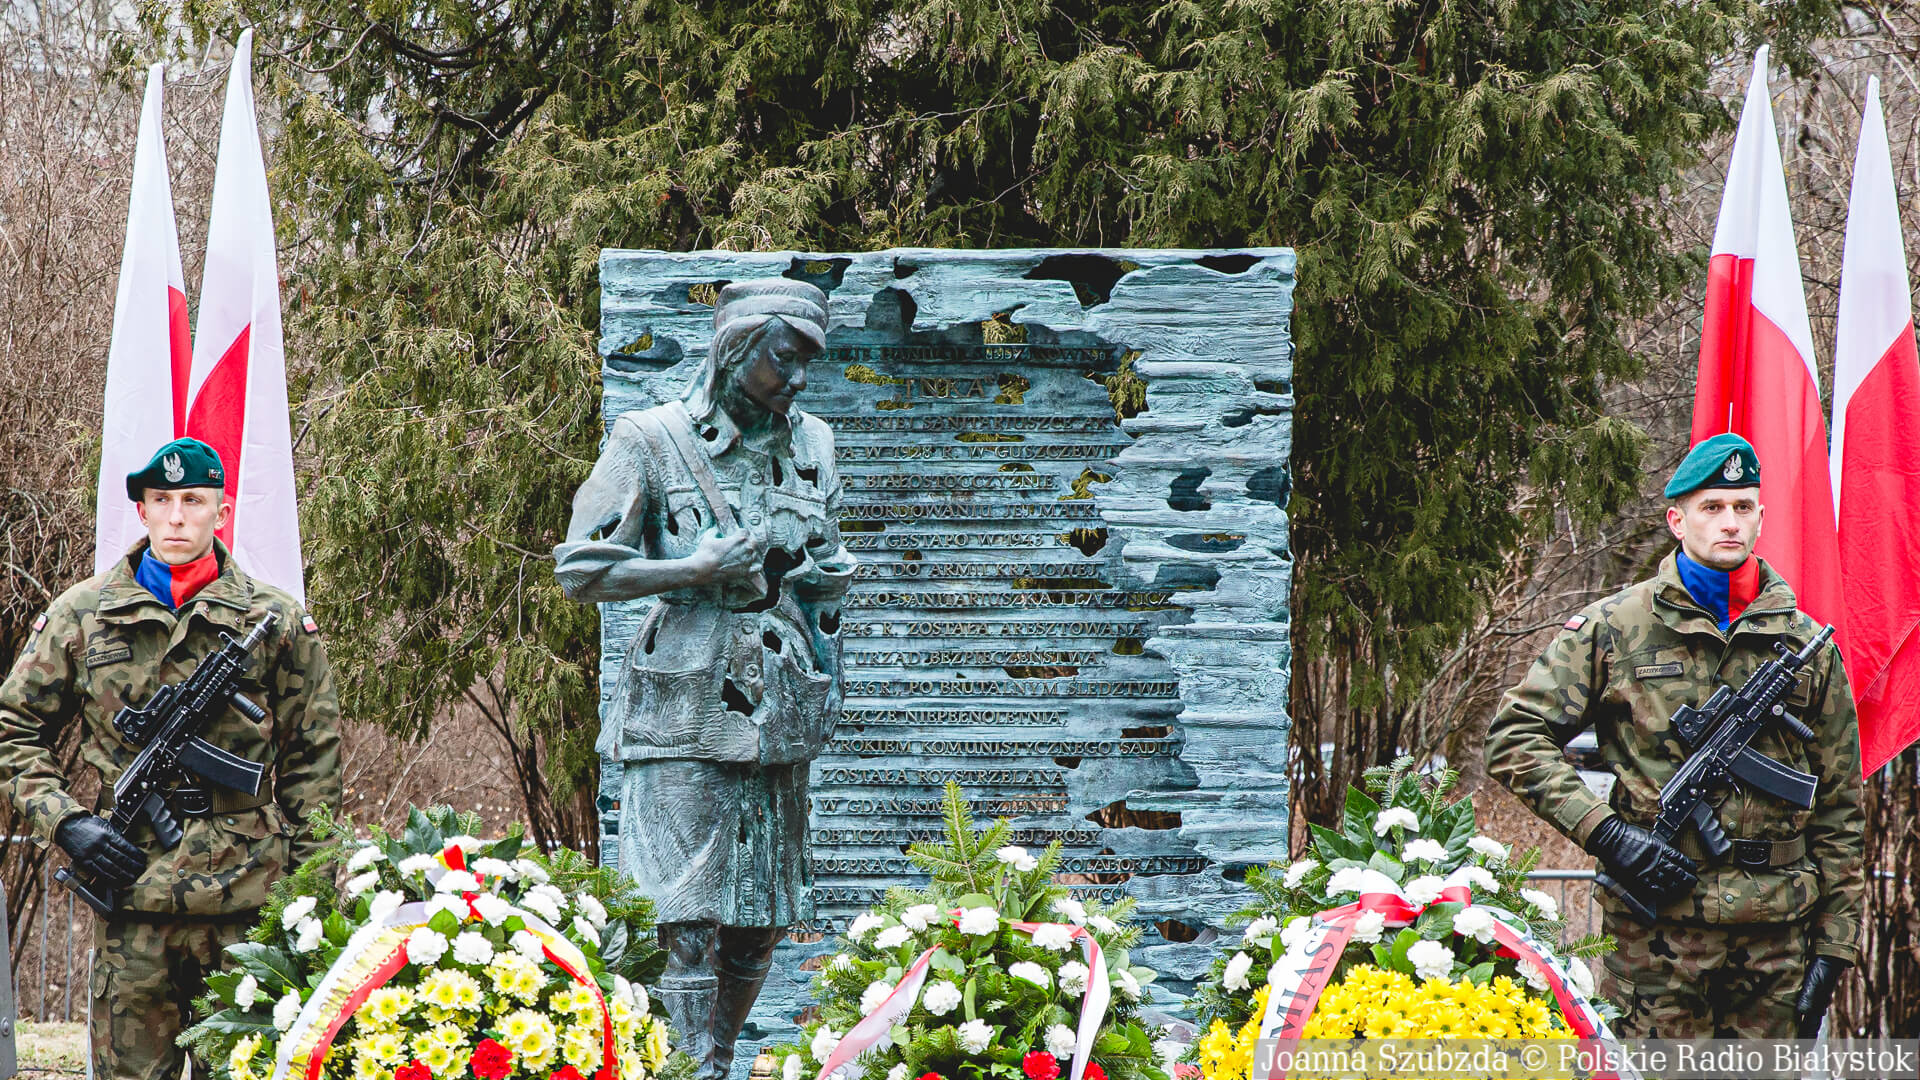 Narodowy Dzień Pamięci Żołnierzy Wyklętych, Pomnik Danuty Siedzikówny "Inki" w Białymstoku, fot. Joanna Szubzda